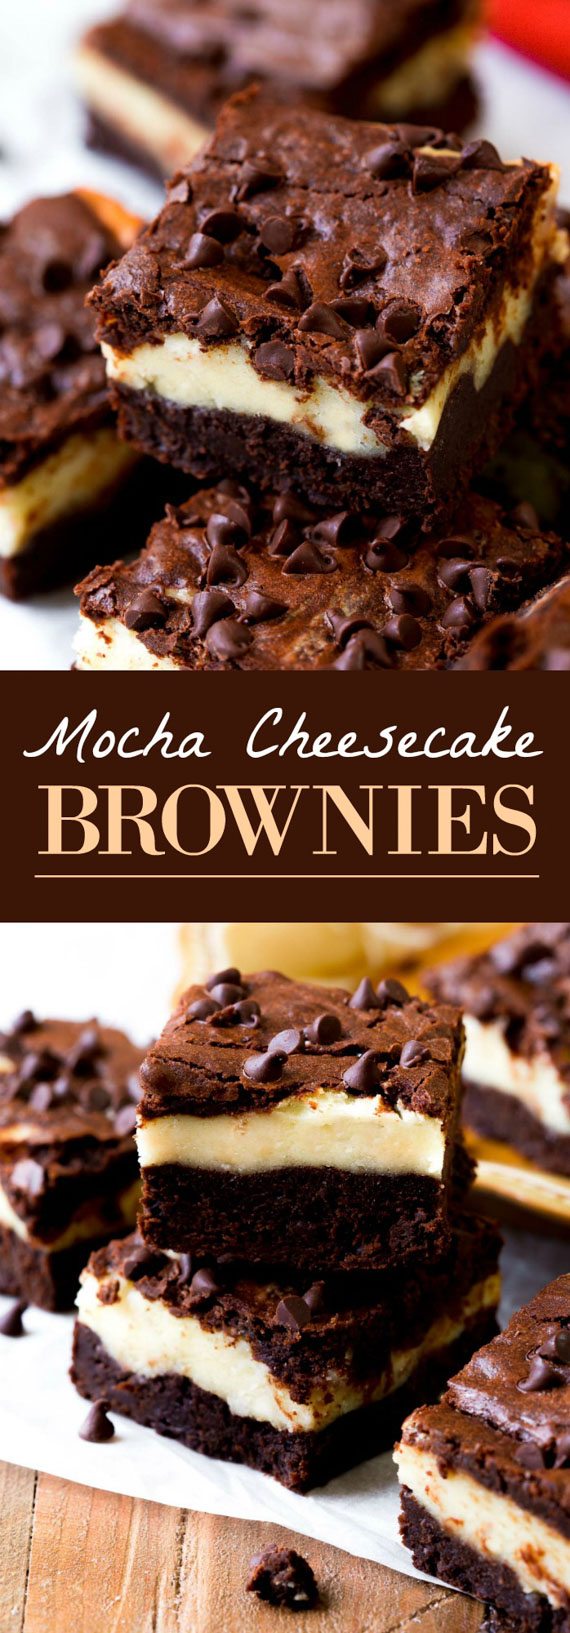 Brownies au gâteau au moka avec une couche de brownie au moka fait maison, un gâteau au fromage, des pépites de chocolat blanc et plus de chocolat! Recette sur sallysbakingaddiction.com